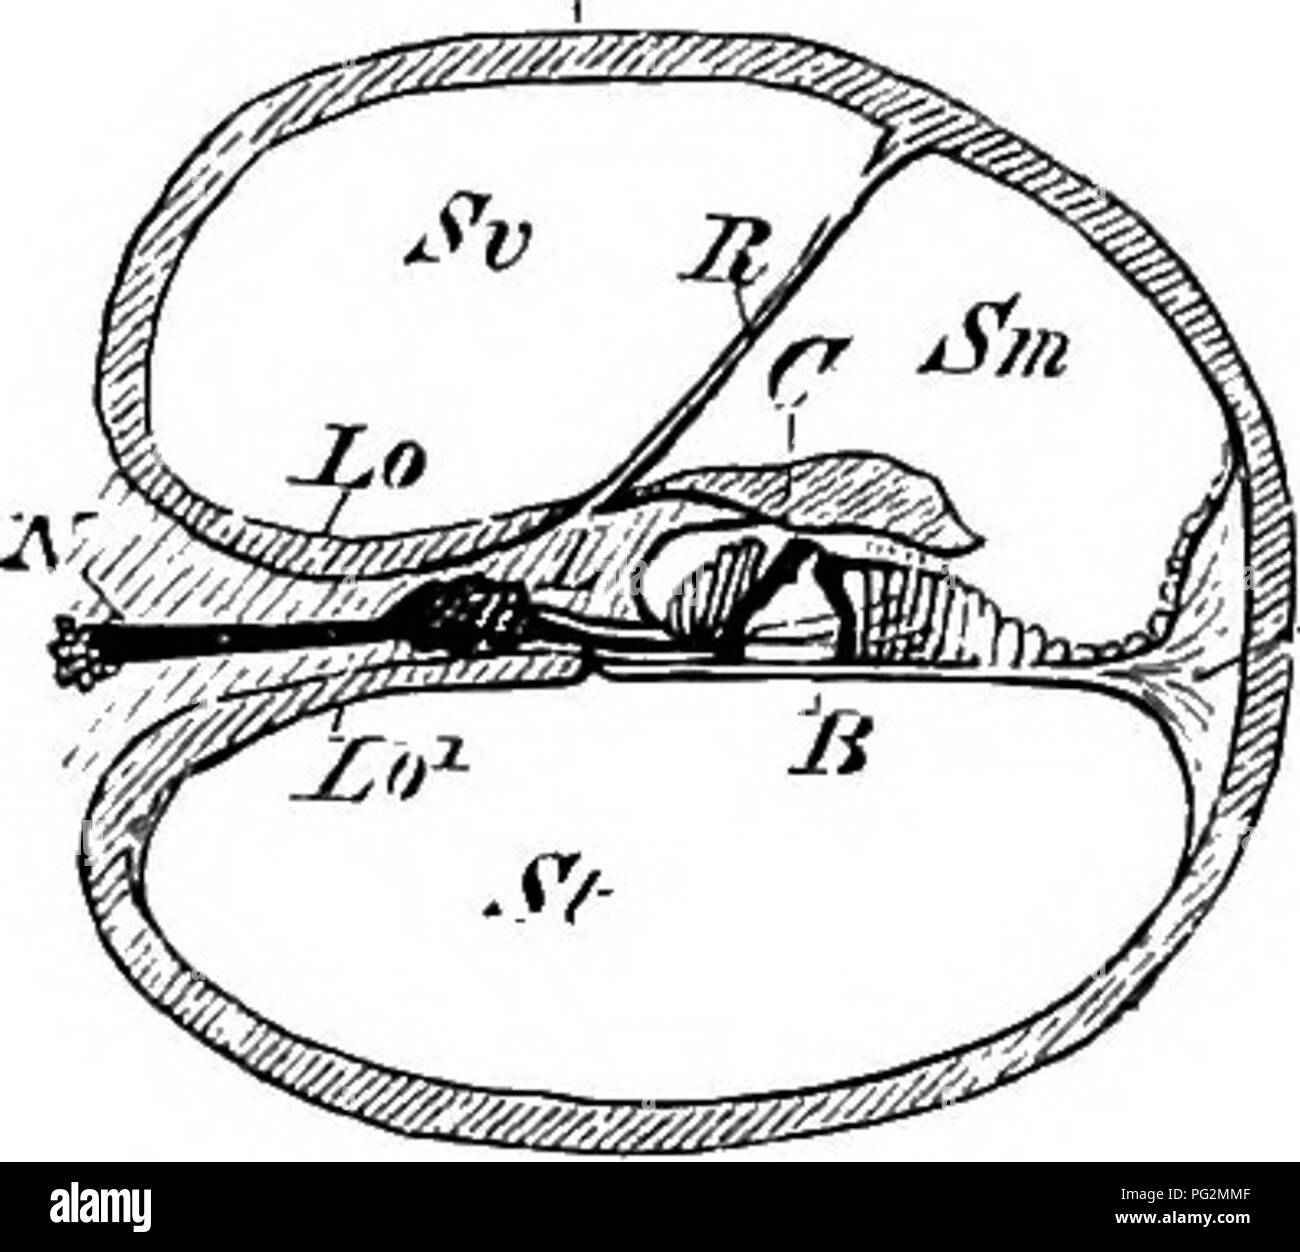 . Éléments de l'anatomie comparée des vertébrés. Anatomie, comparatif. Uj- BoMY cochlée de IIax. (D'après A.. Eclijer) un axe, lso lso,^ ; limbe, spiralis ossea, le bord libre de qui, par l'perforé les fibres du nerf auditif, est visible à t ; H, hamulus. Fig. 186.-DiAOR.VMM.-iTia coupe transversale de la cochlée ok mammifère. KS, cochlée osseuse ; Lo, Lo^, les deux couches de la lamina spiralis ossea, entre lesquels au jVthe (neive auditif avec le ganglion de gauche, Z) est considérée ; L, limbe laminse spiralis ; B, nienibrana basilaris, sur lequel le neuro-epithe- lium se trouve ; B, Rei Banque D'Images